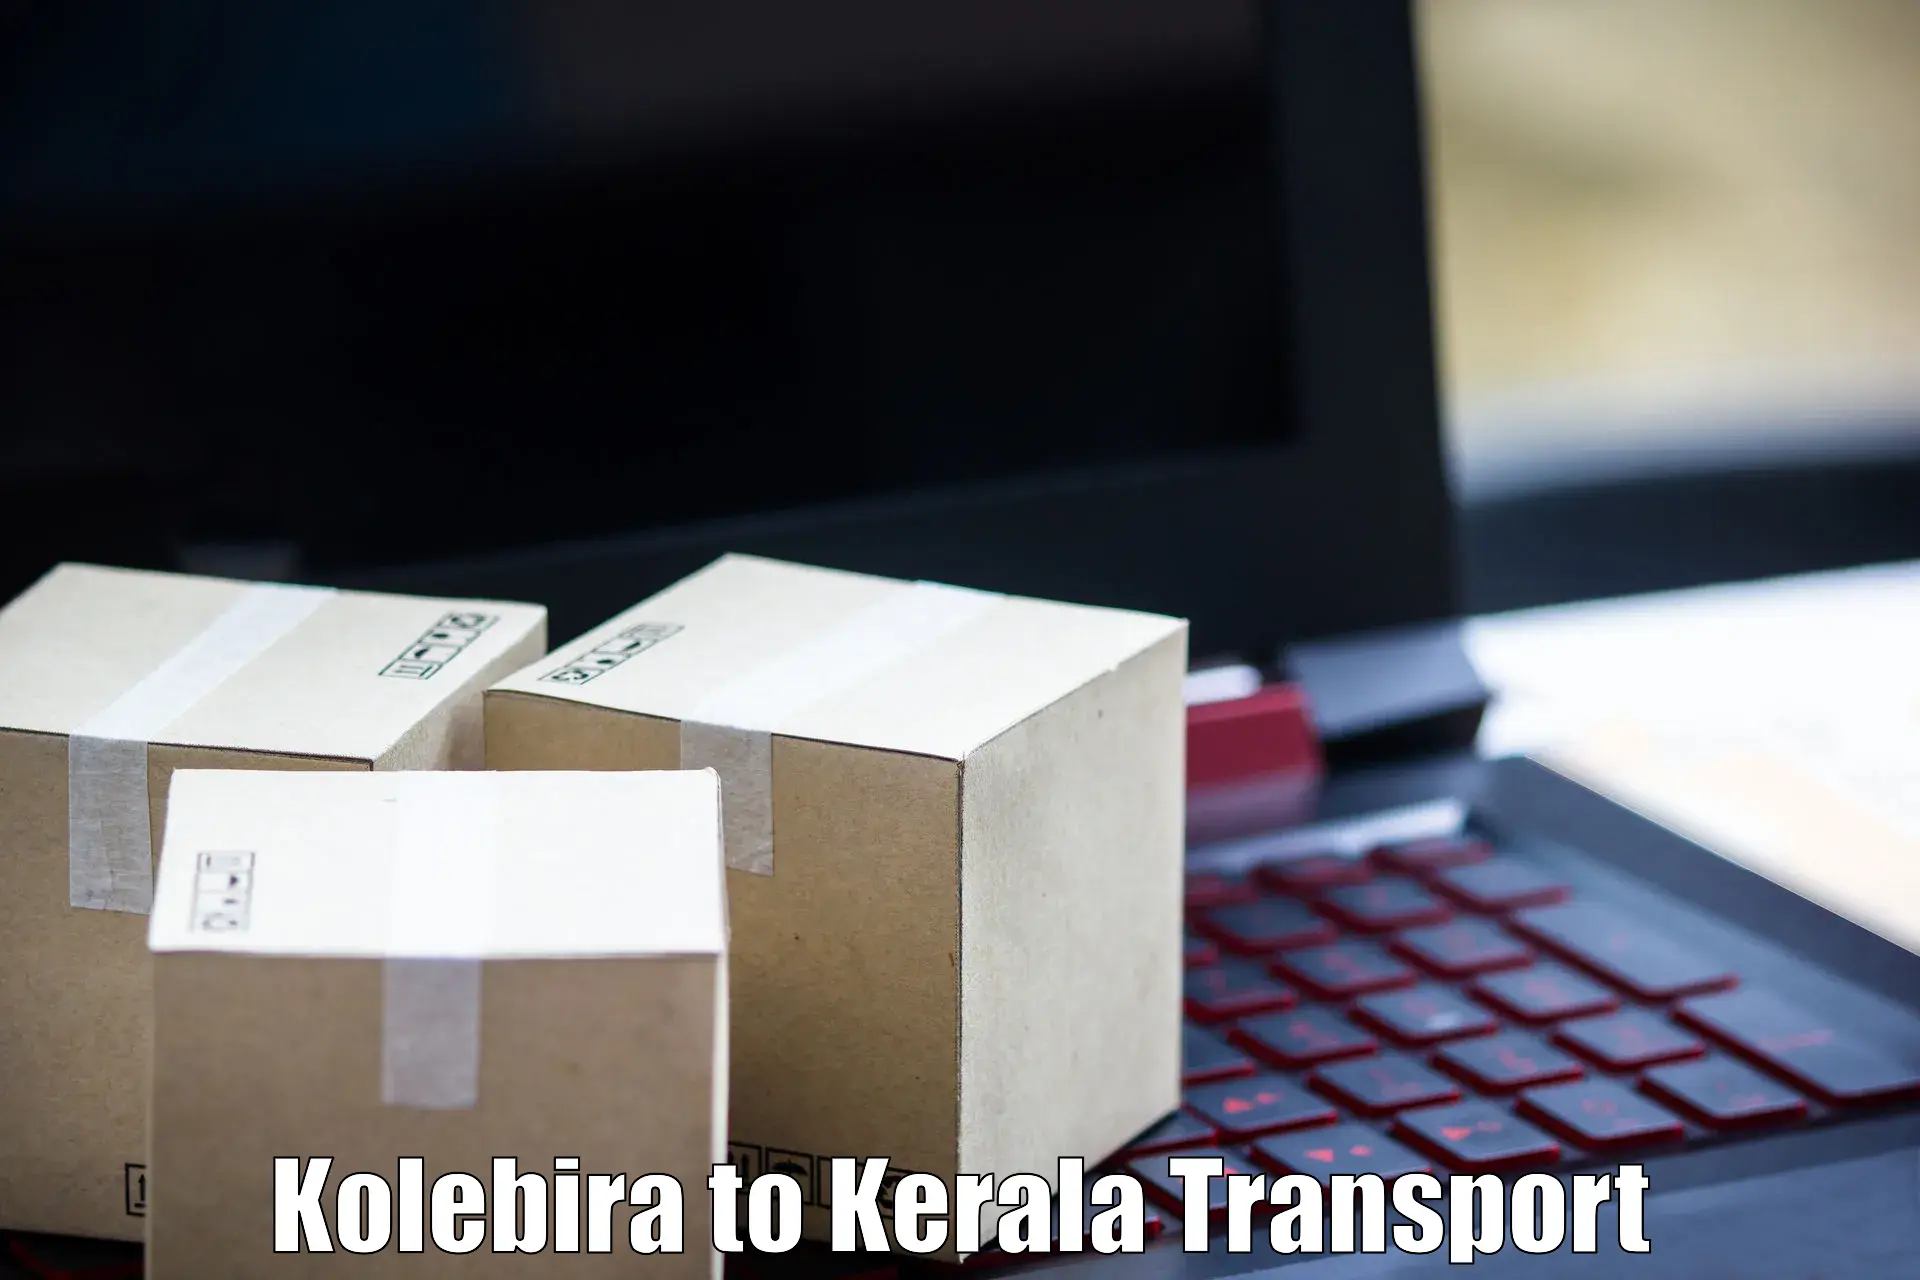 Online transport service Kolebira to Thrissur